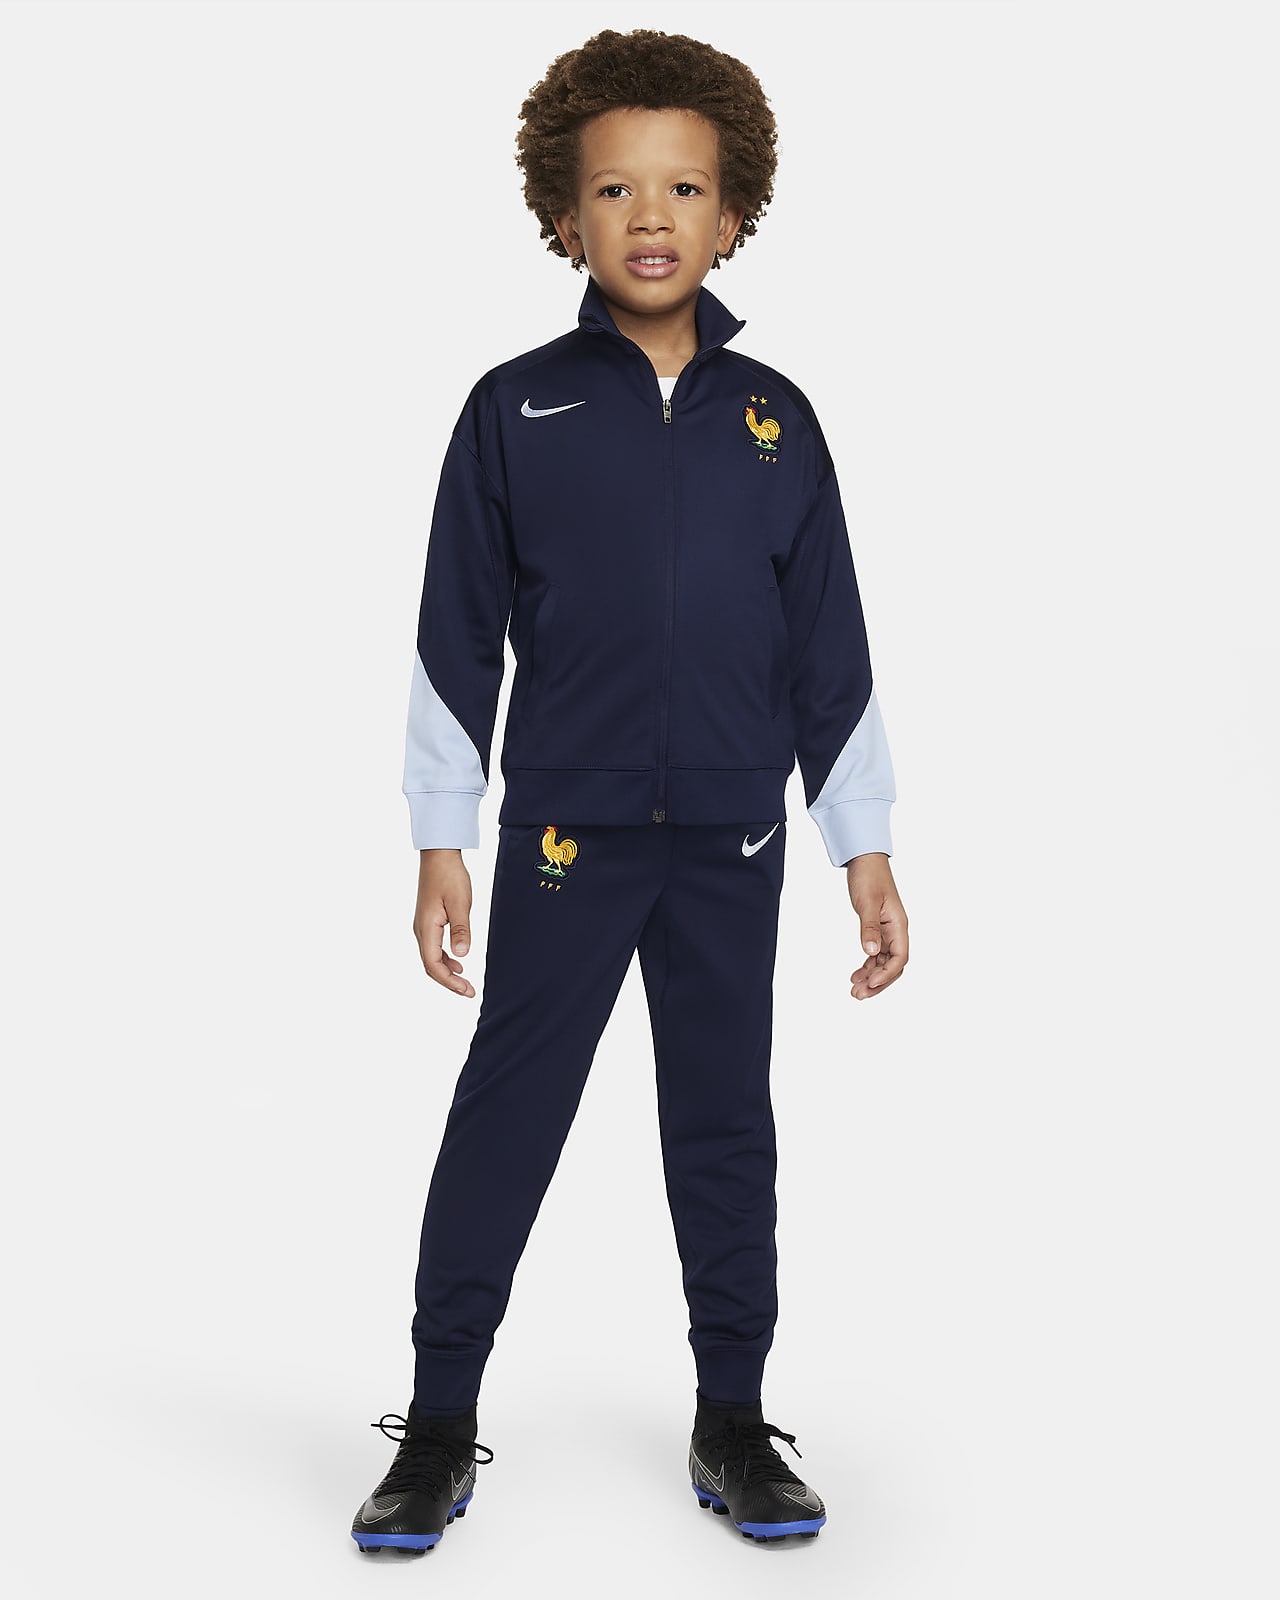 Frankreich Strike Nike Dri-FIT-Fußball-Trainingsanzug aus Strickmaterial für jüngere Kinder